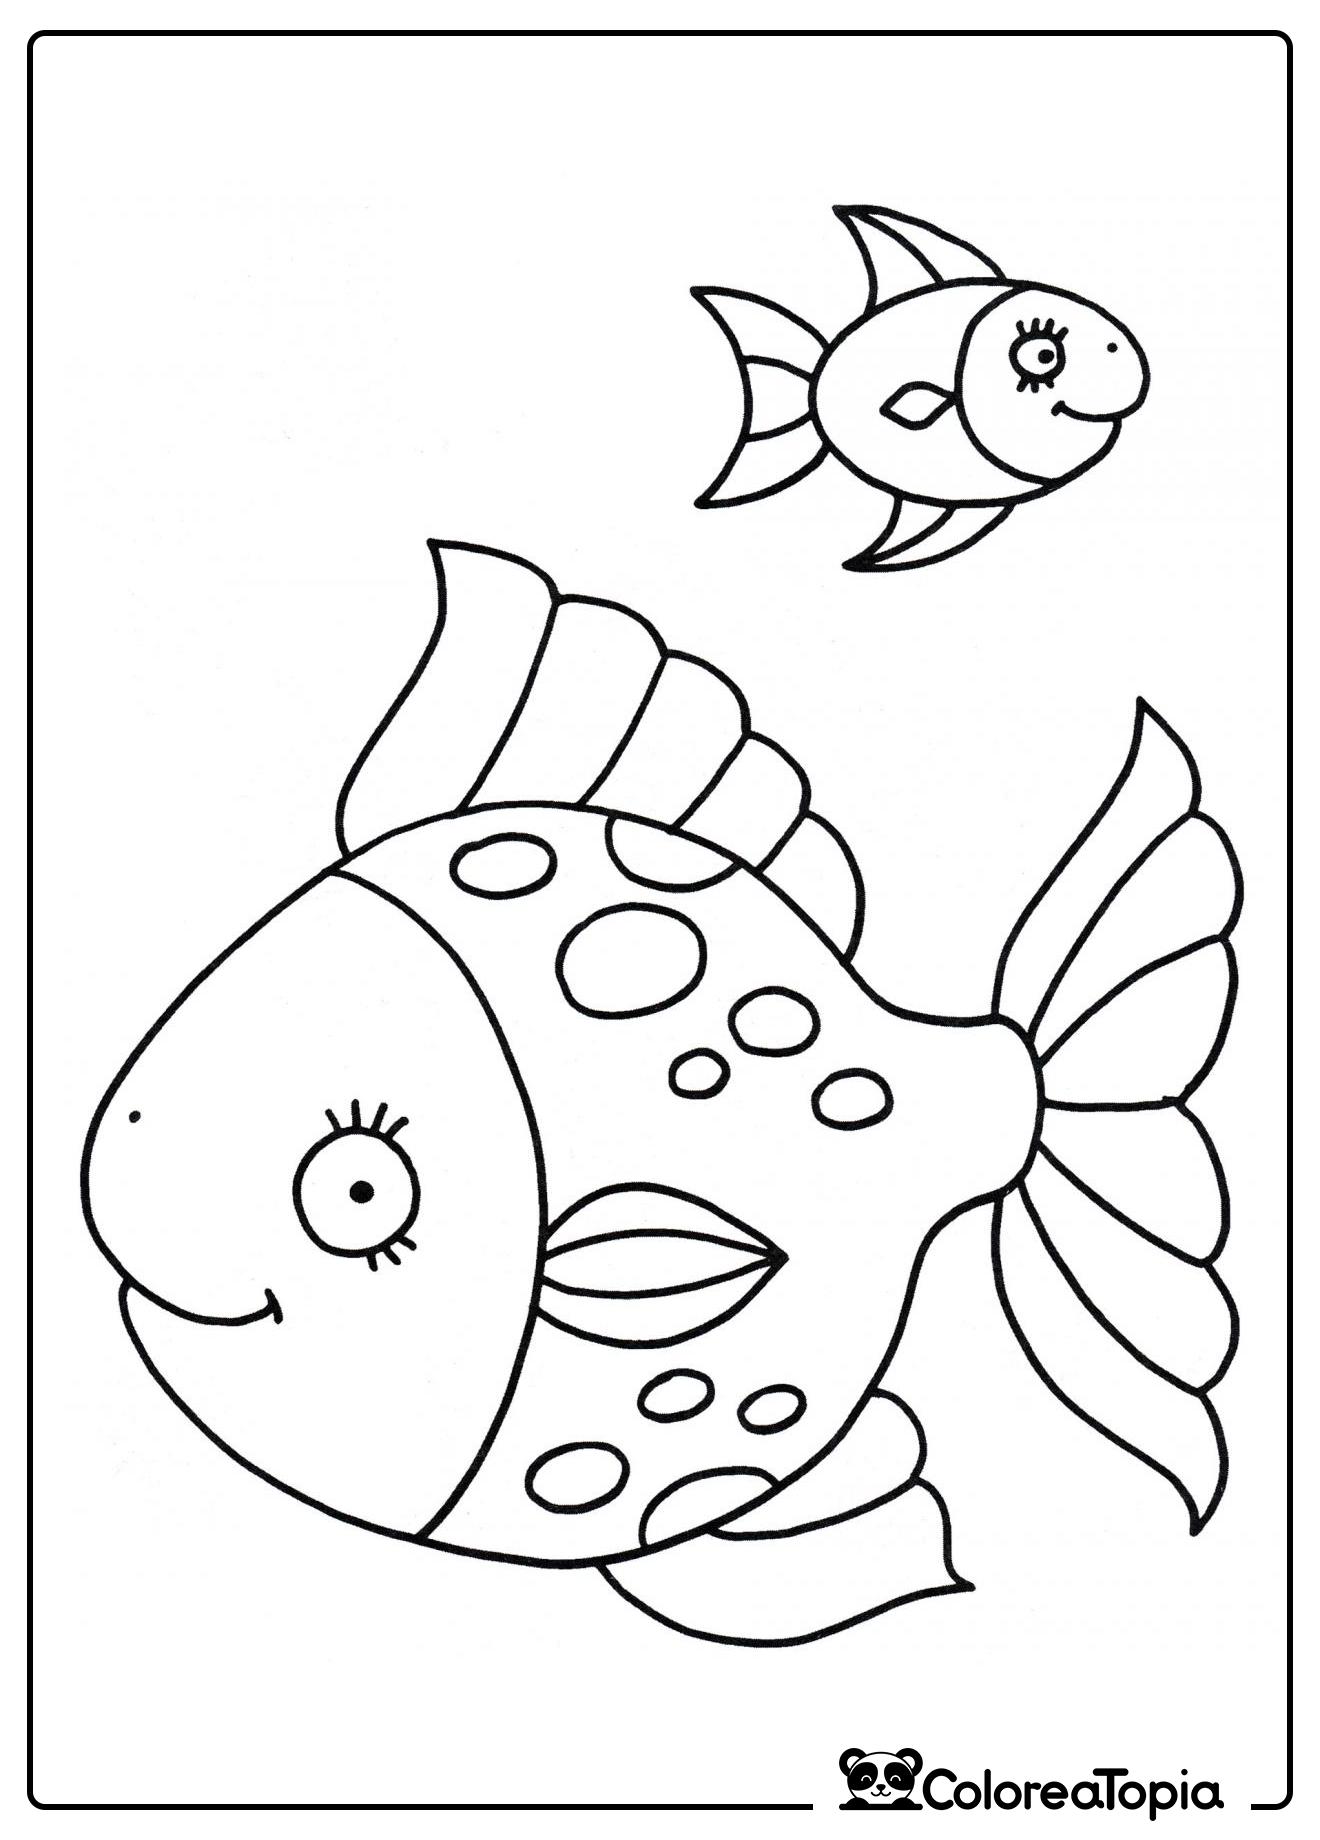 Dos peces brillantes - dibujo para colorear